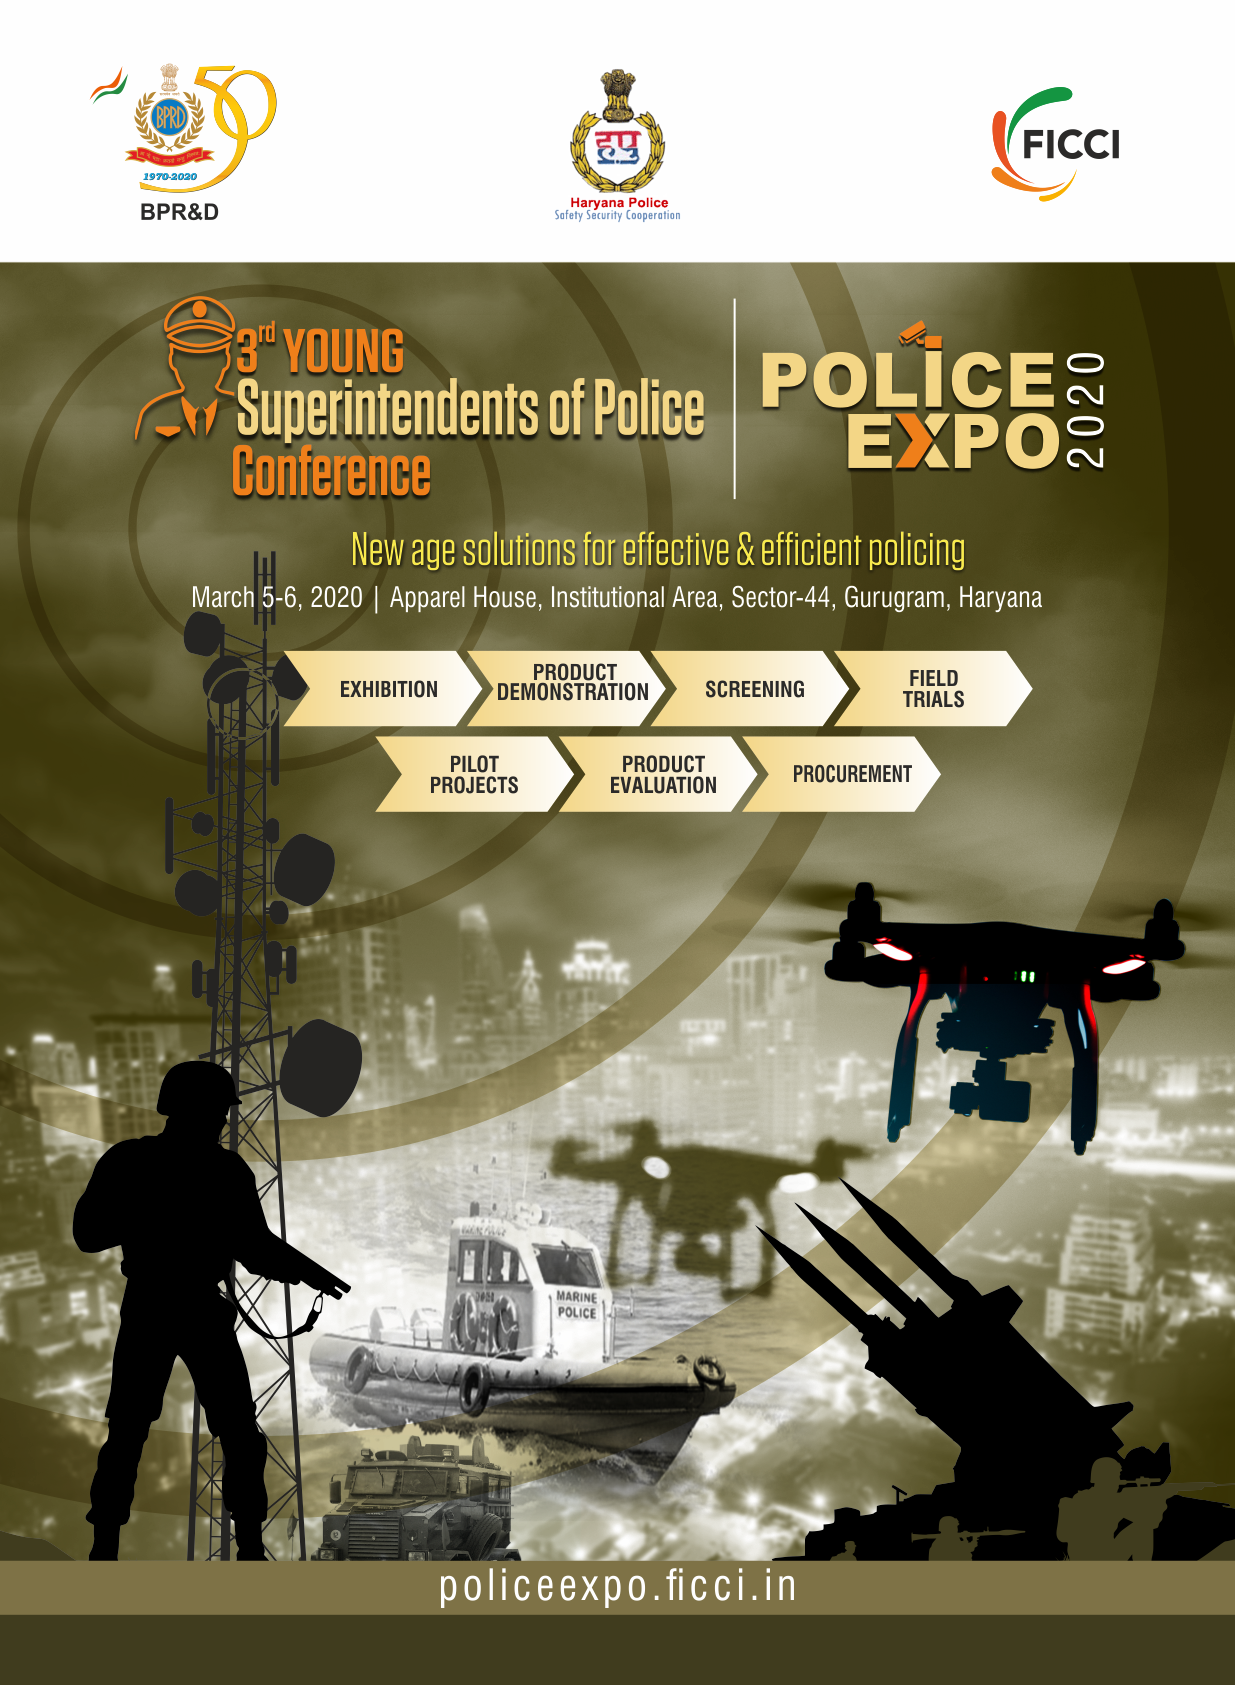 Police Expo 2020, Gurgaon, Haryana, India